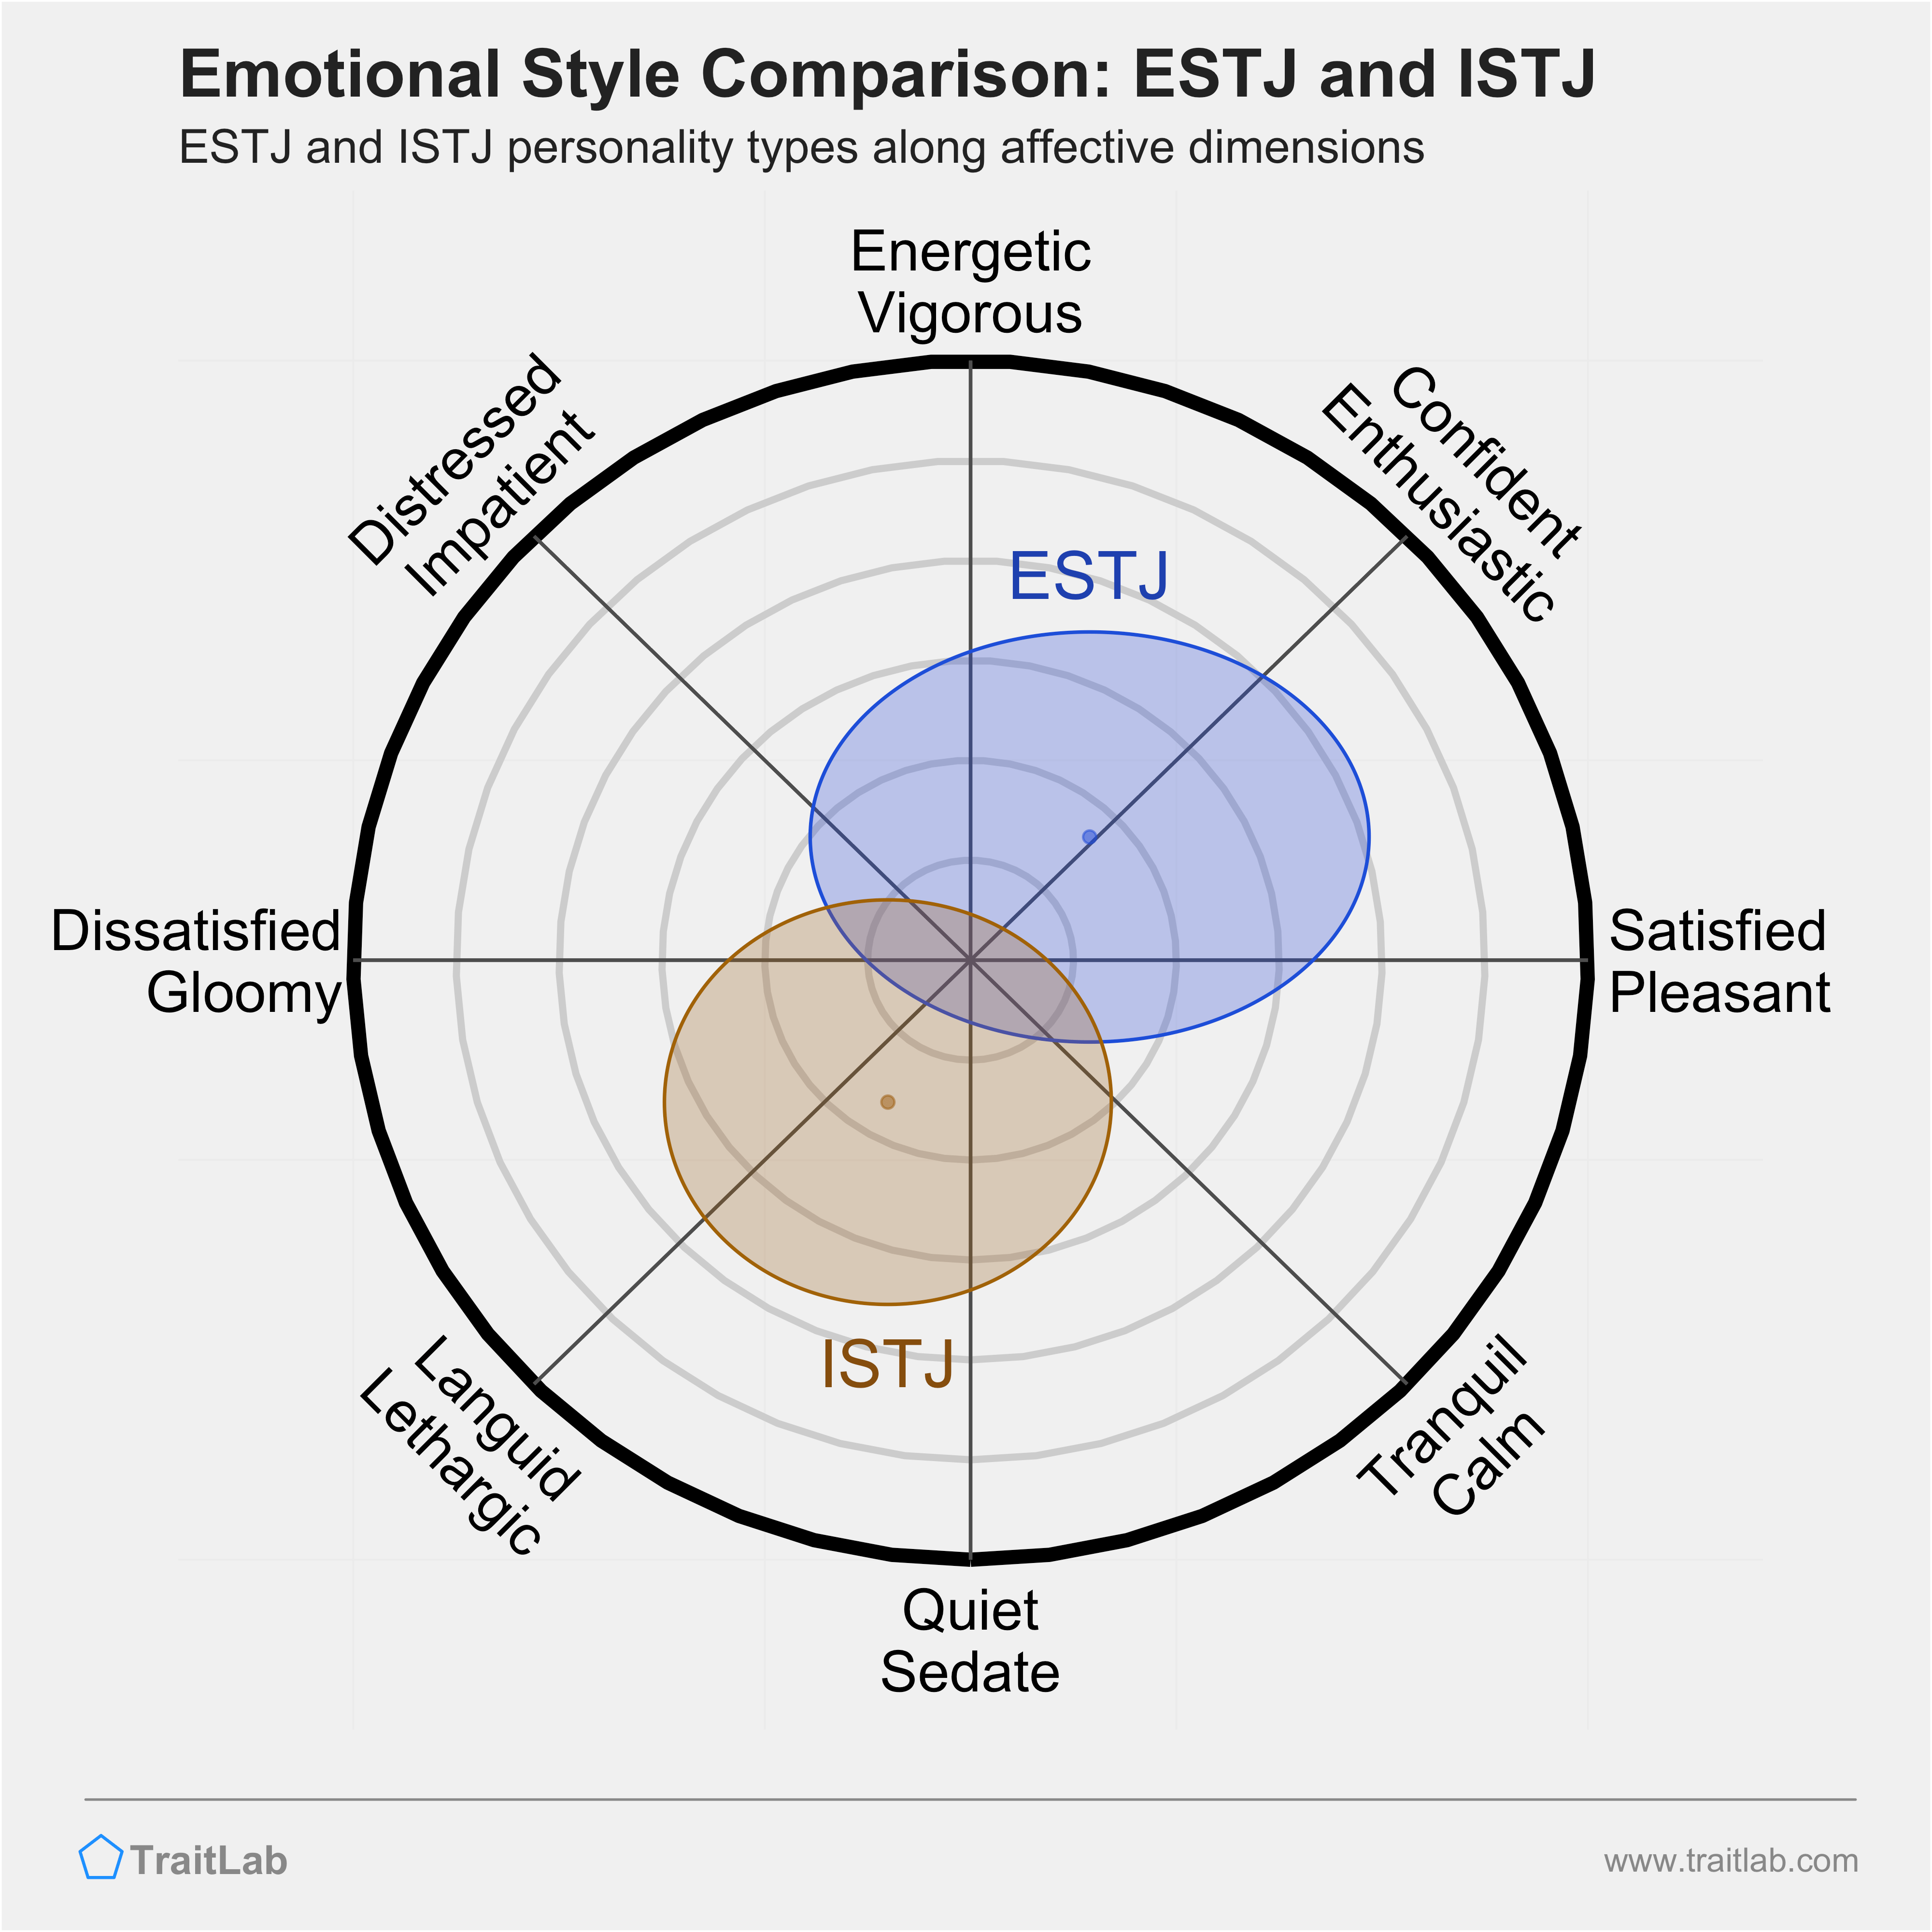 ESTJ and ISTJ comparison across emotional (affective) dimensions